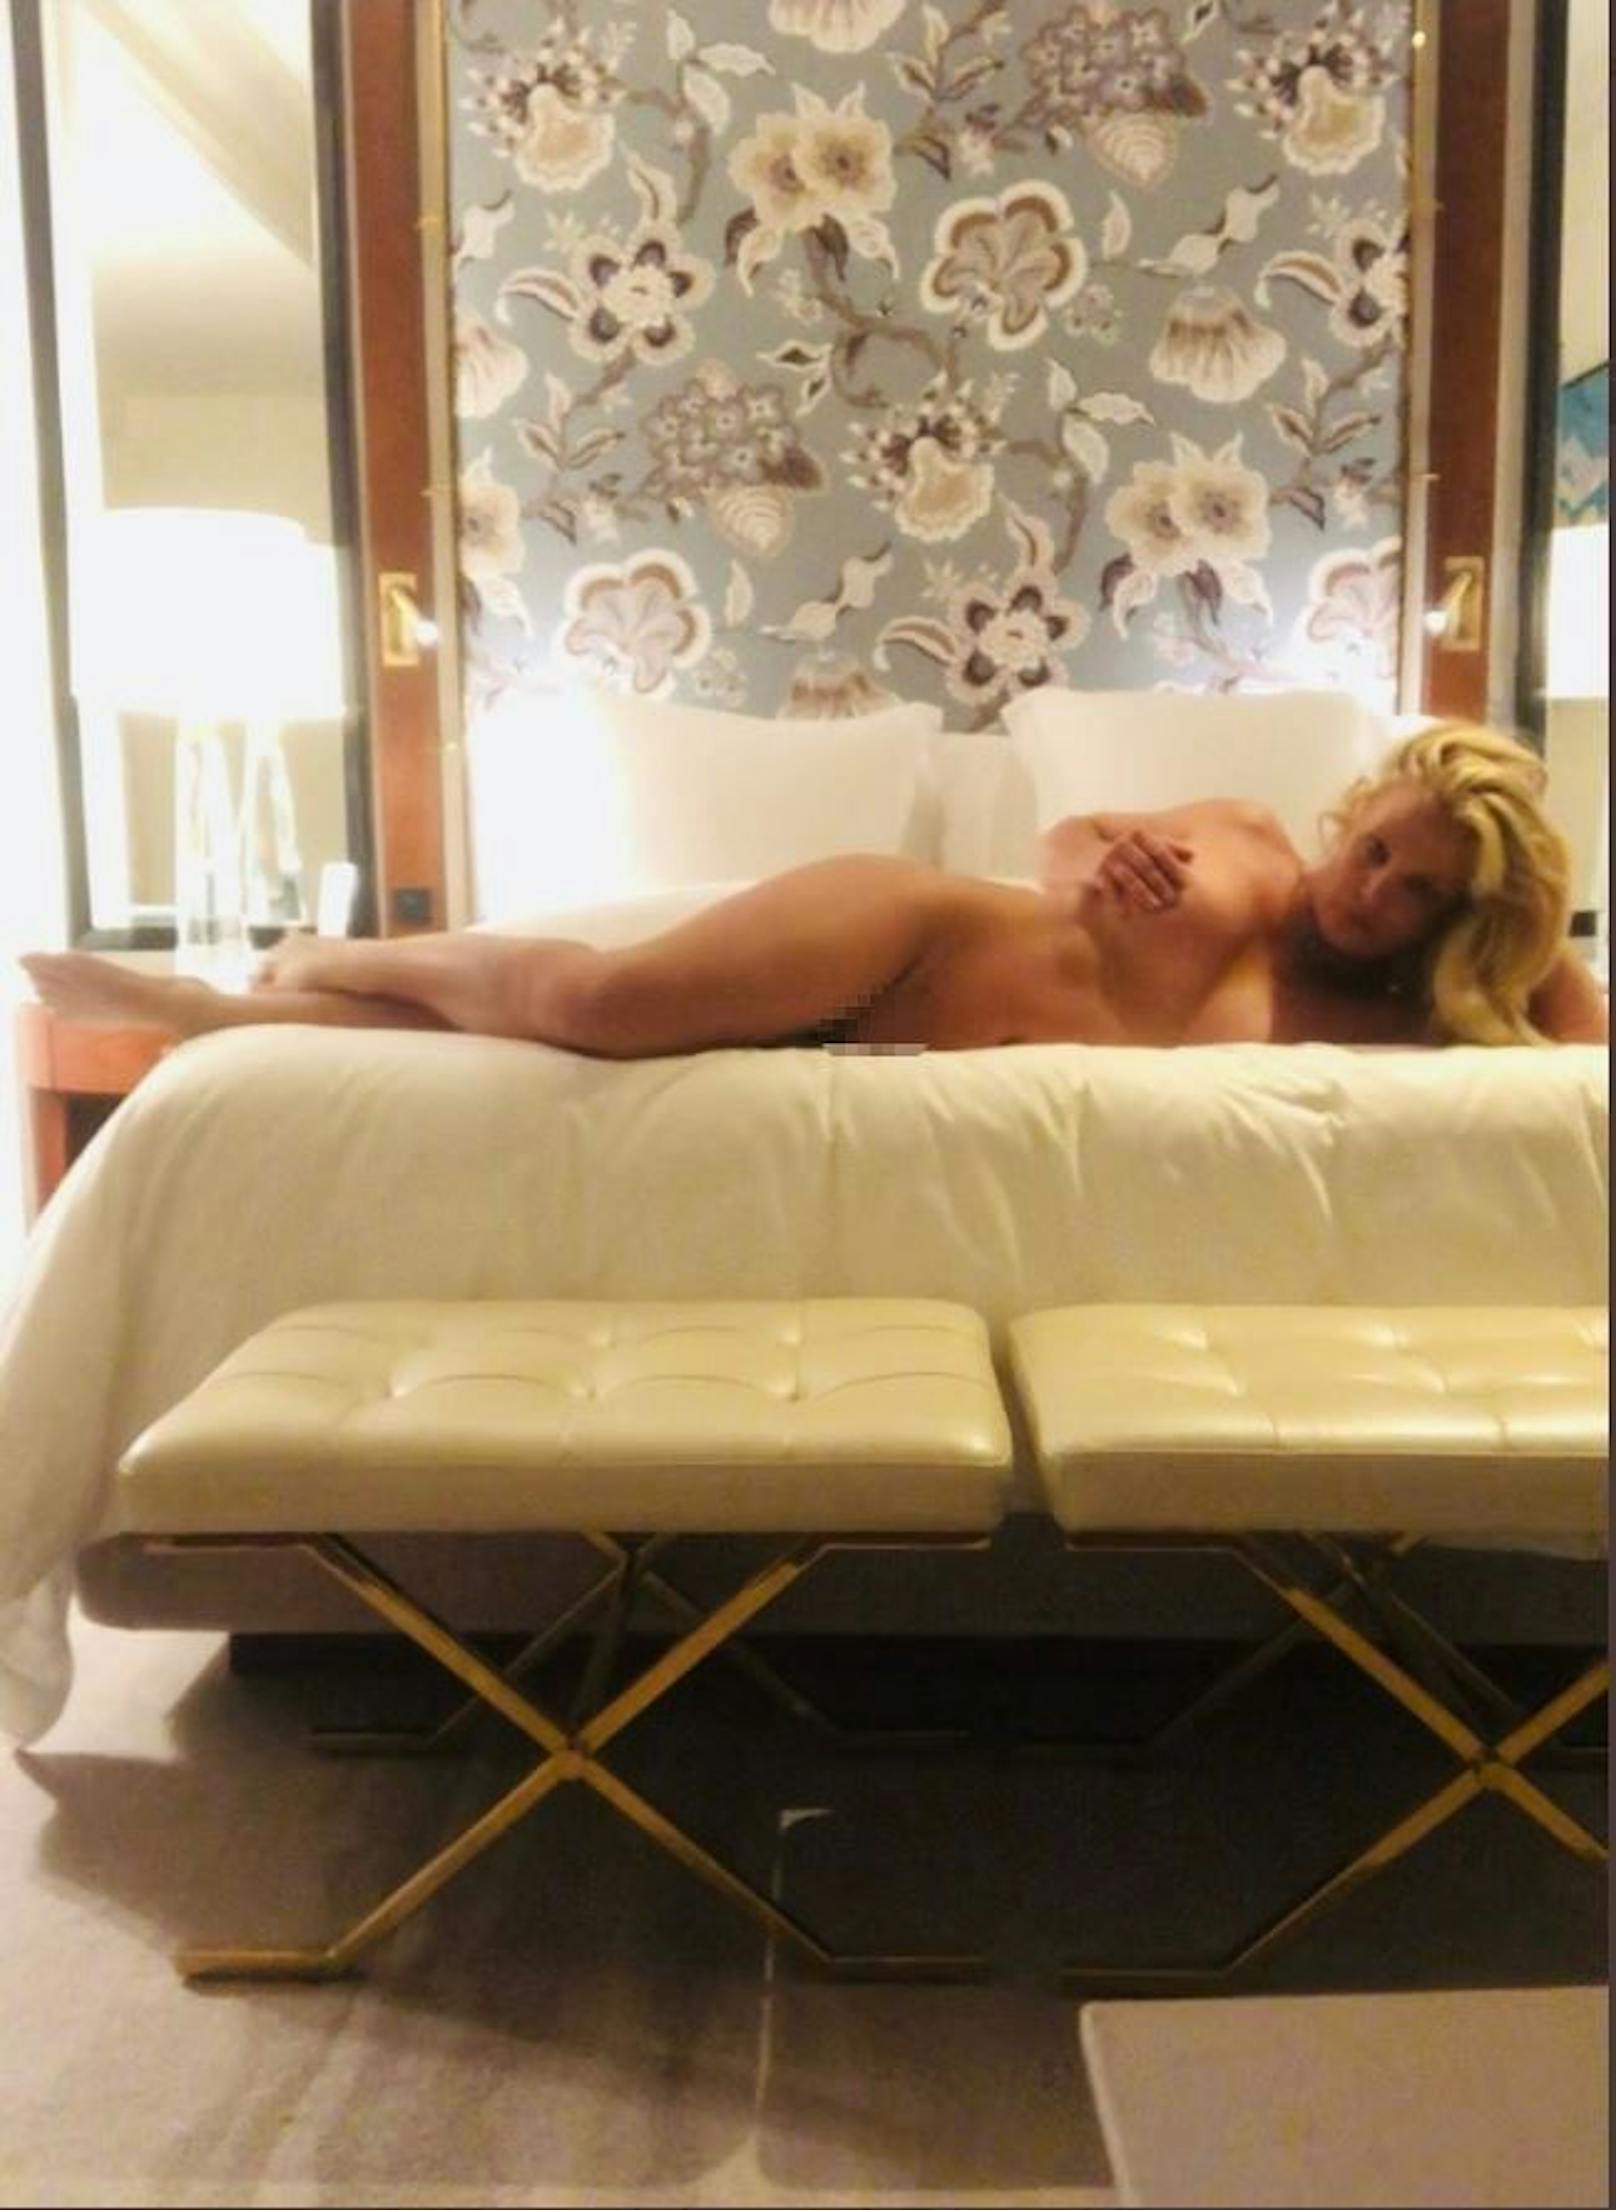 Britney zieht blank - erneut!